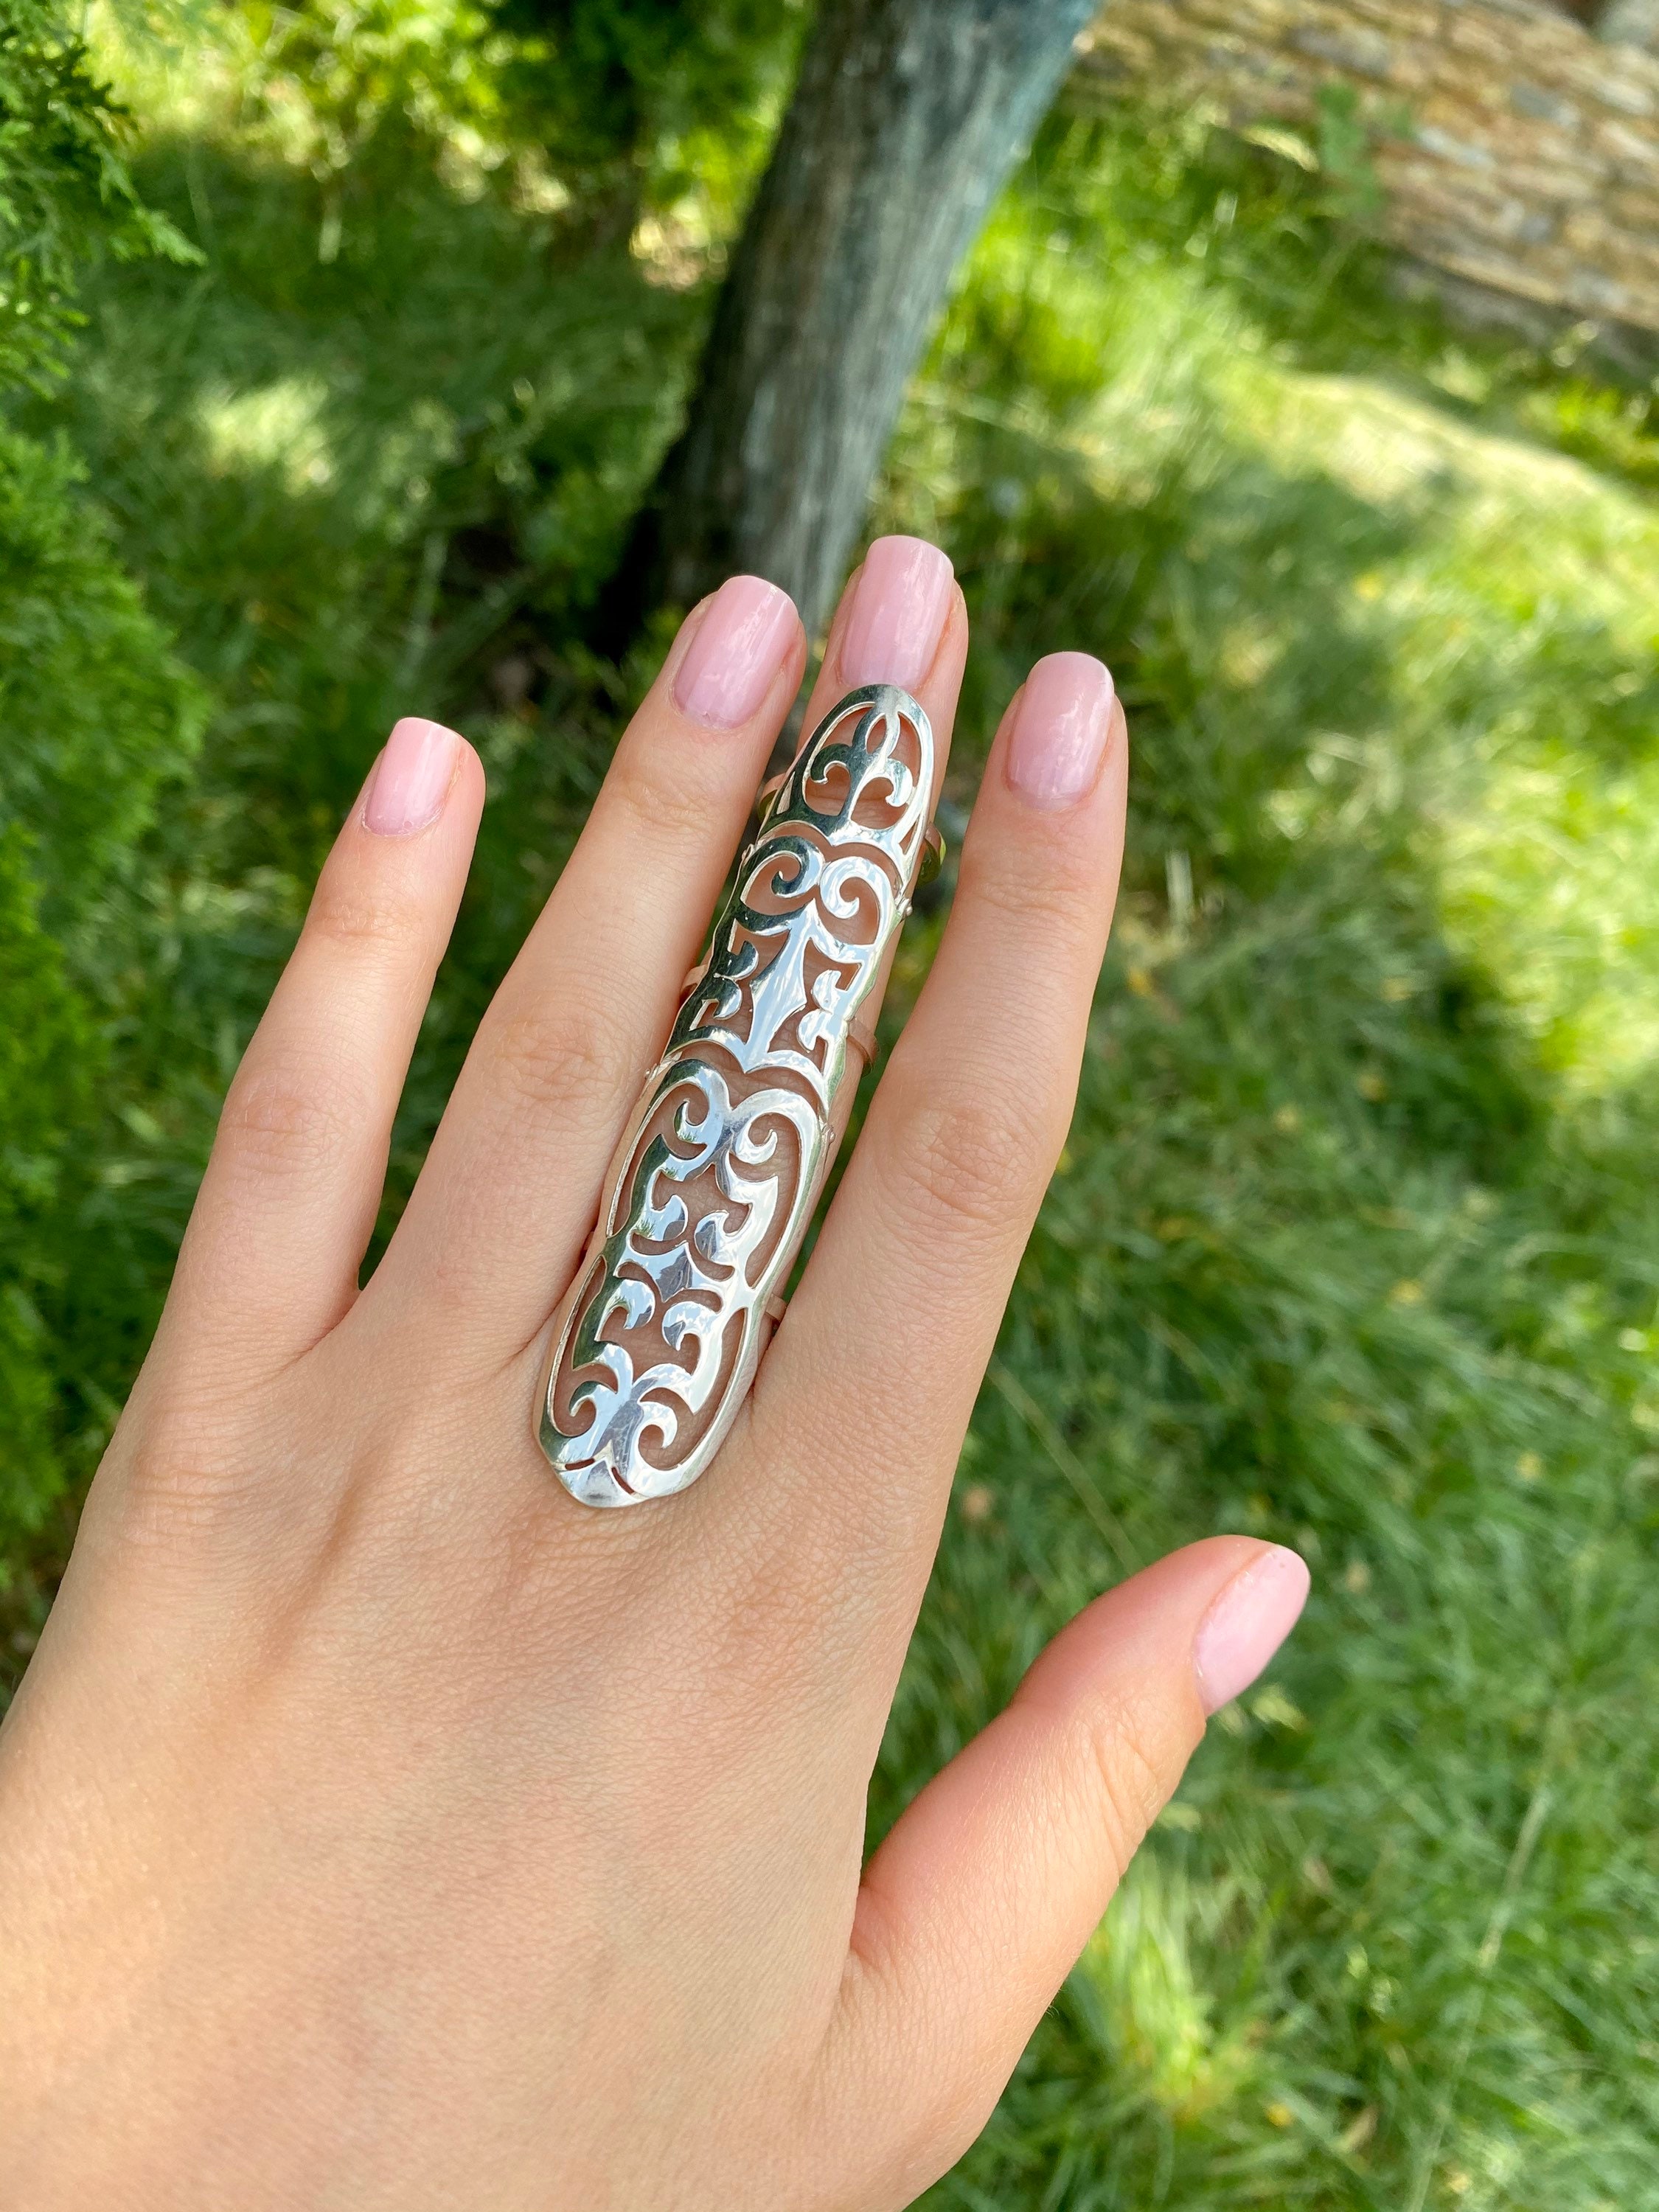 Full Finger Ring Finger Long Ring Long Finger Ring Sterling Silver